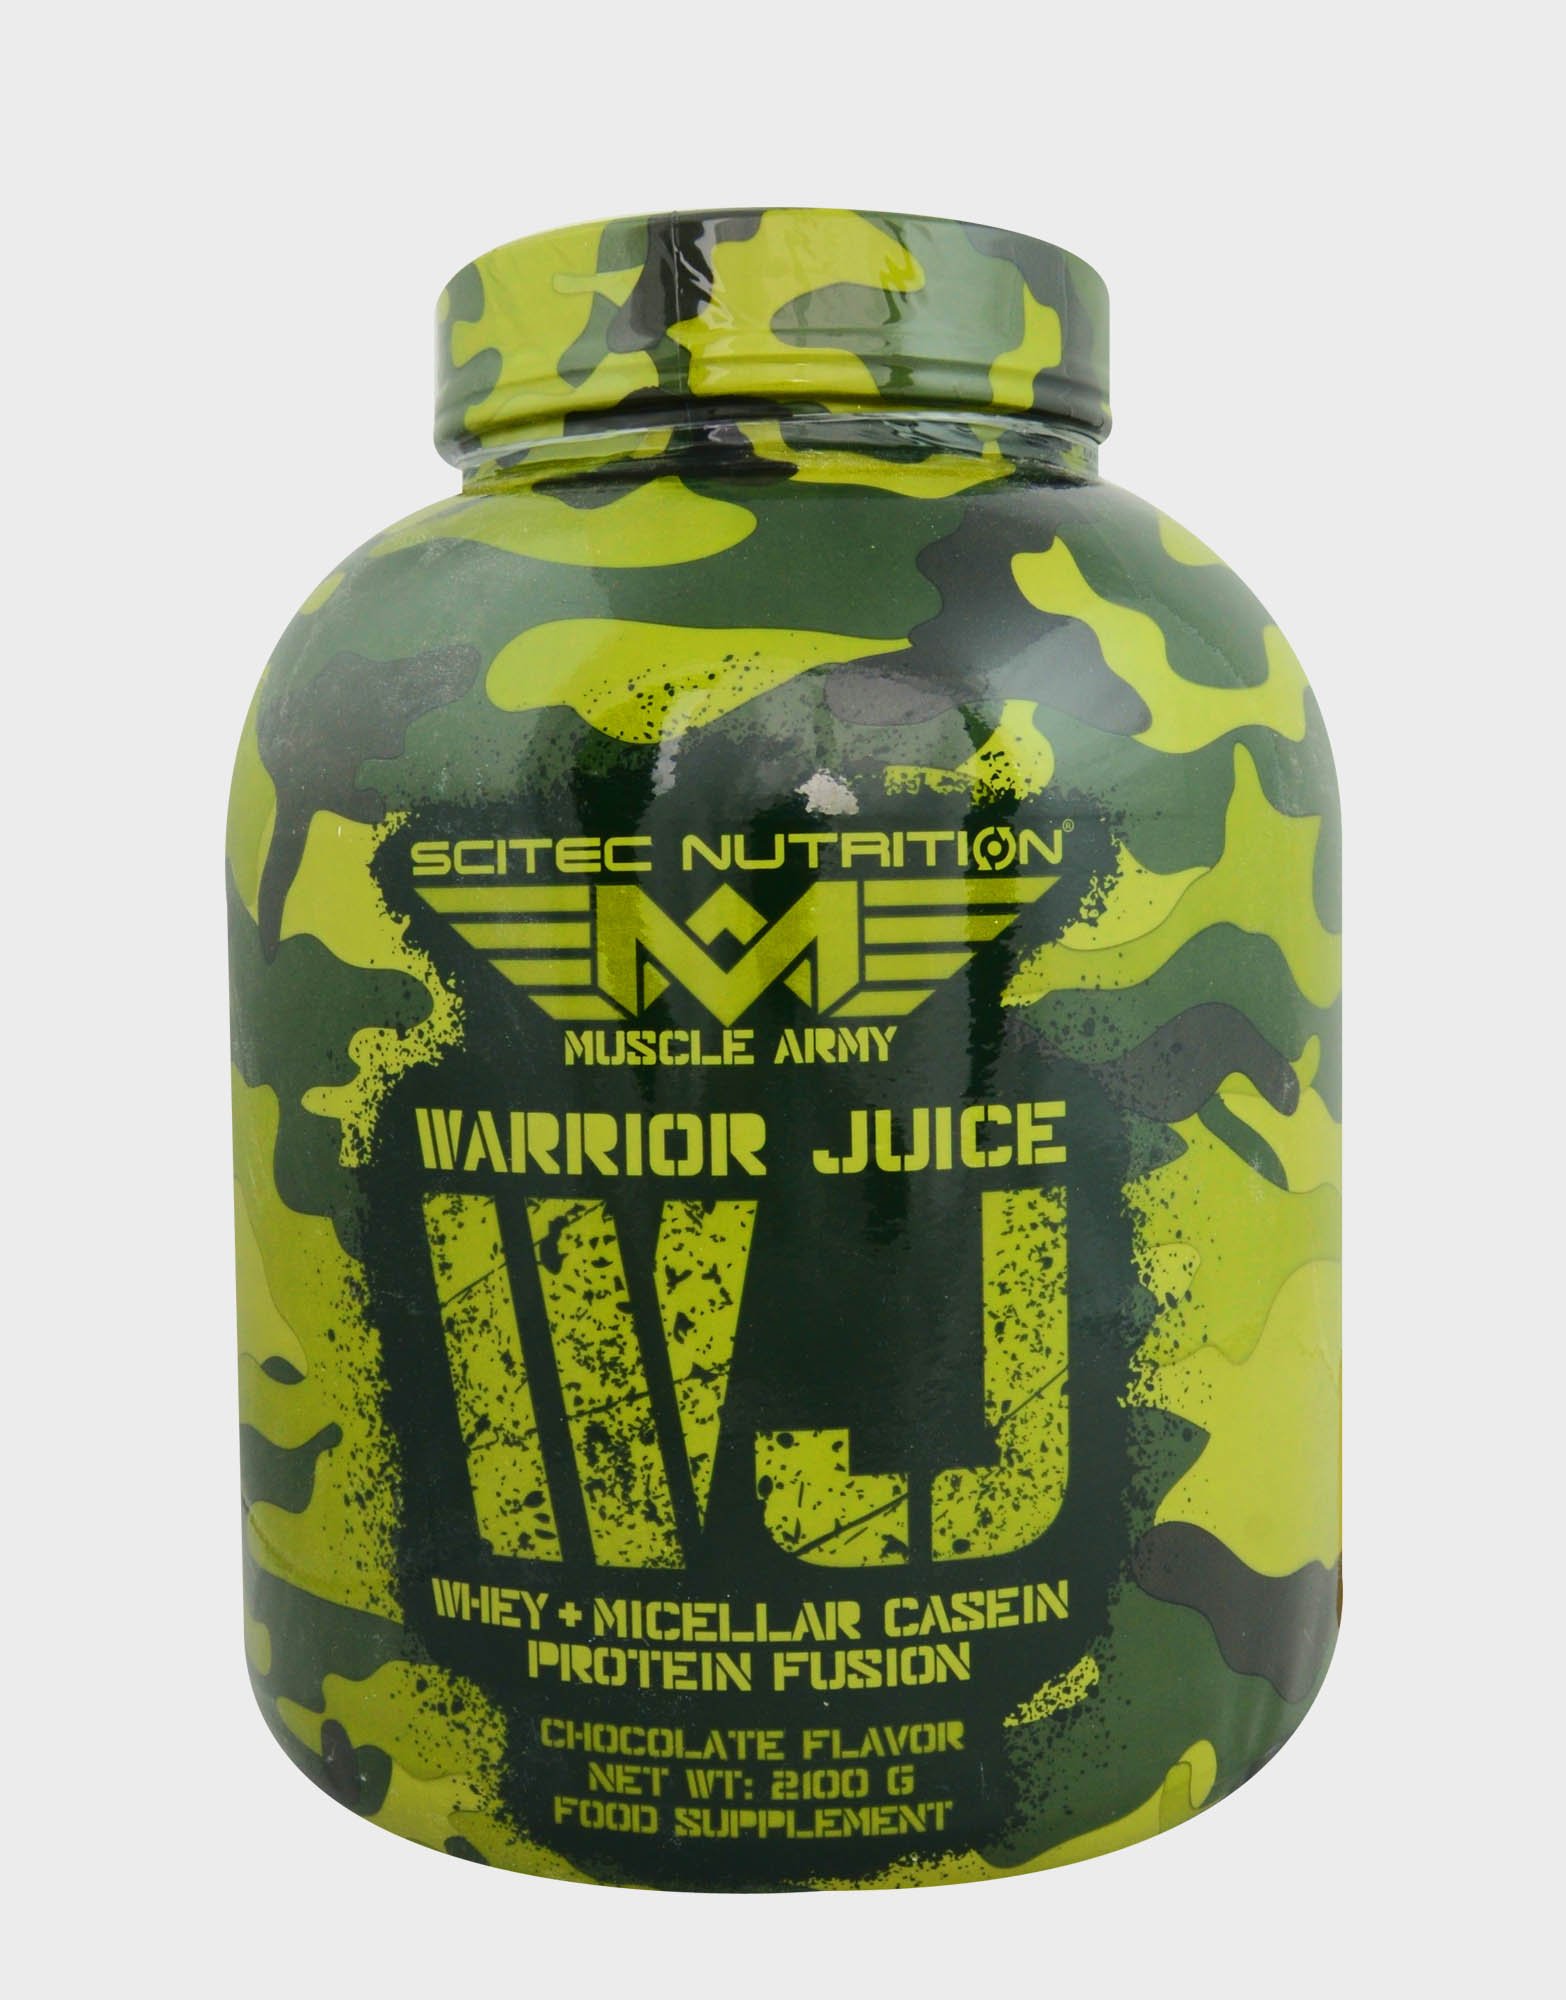 Warrior Juice, 2100 g, Scitec Nutrition. Mezcla de proteínas. 